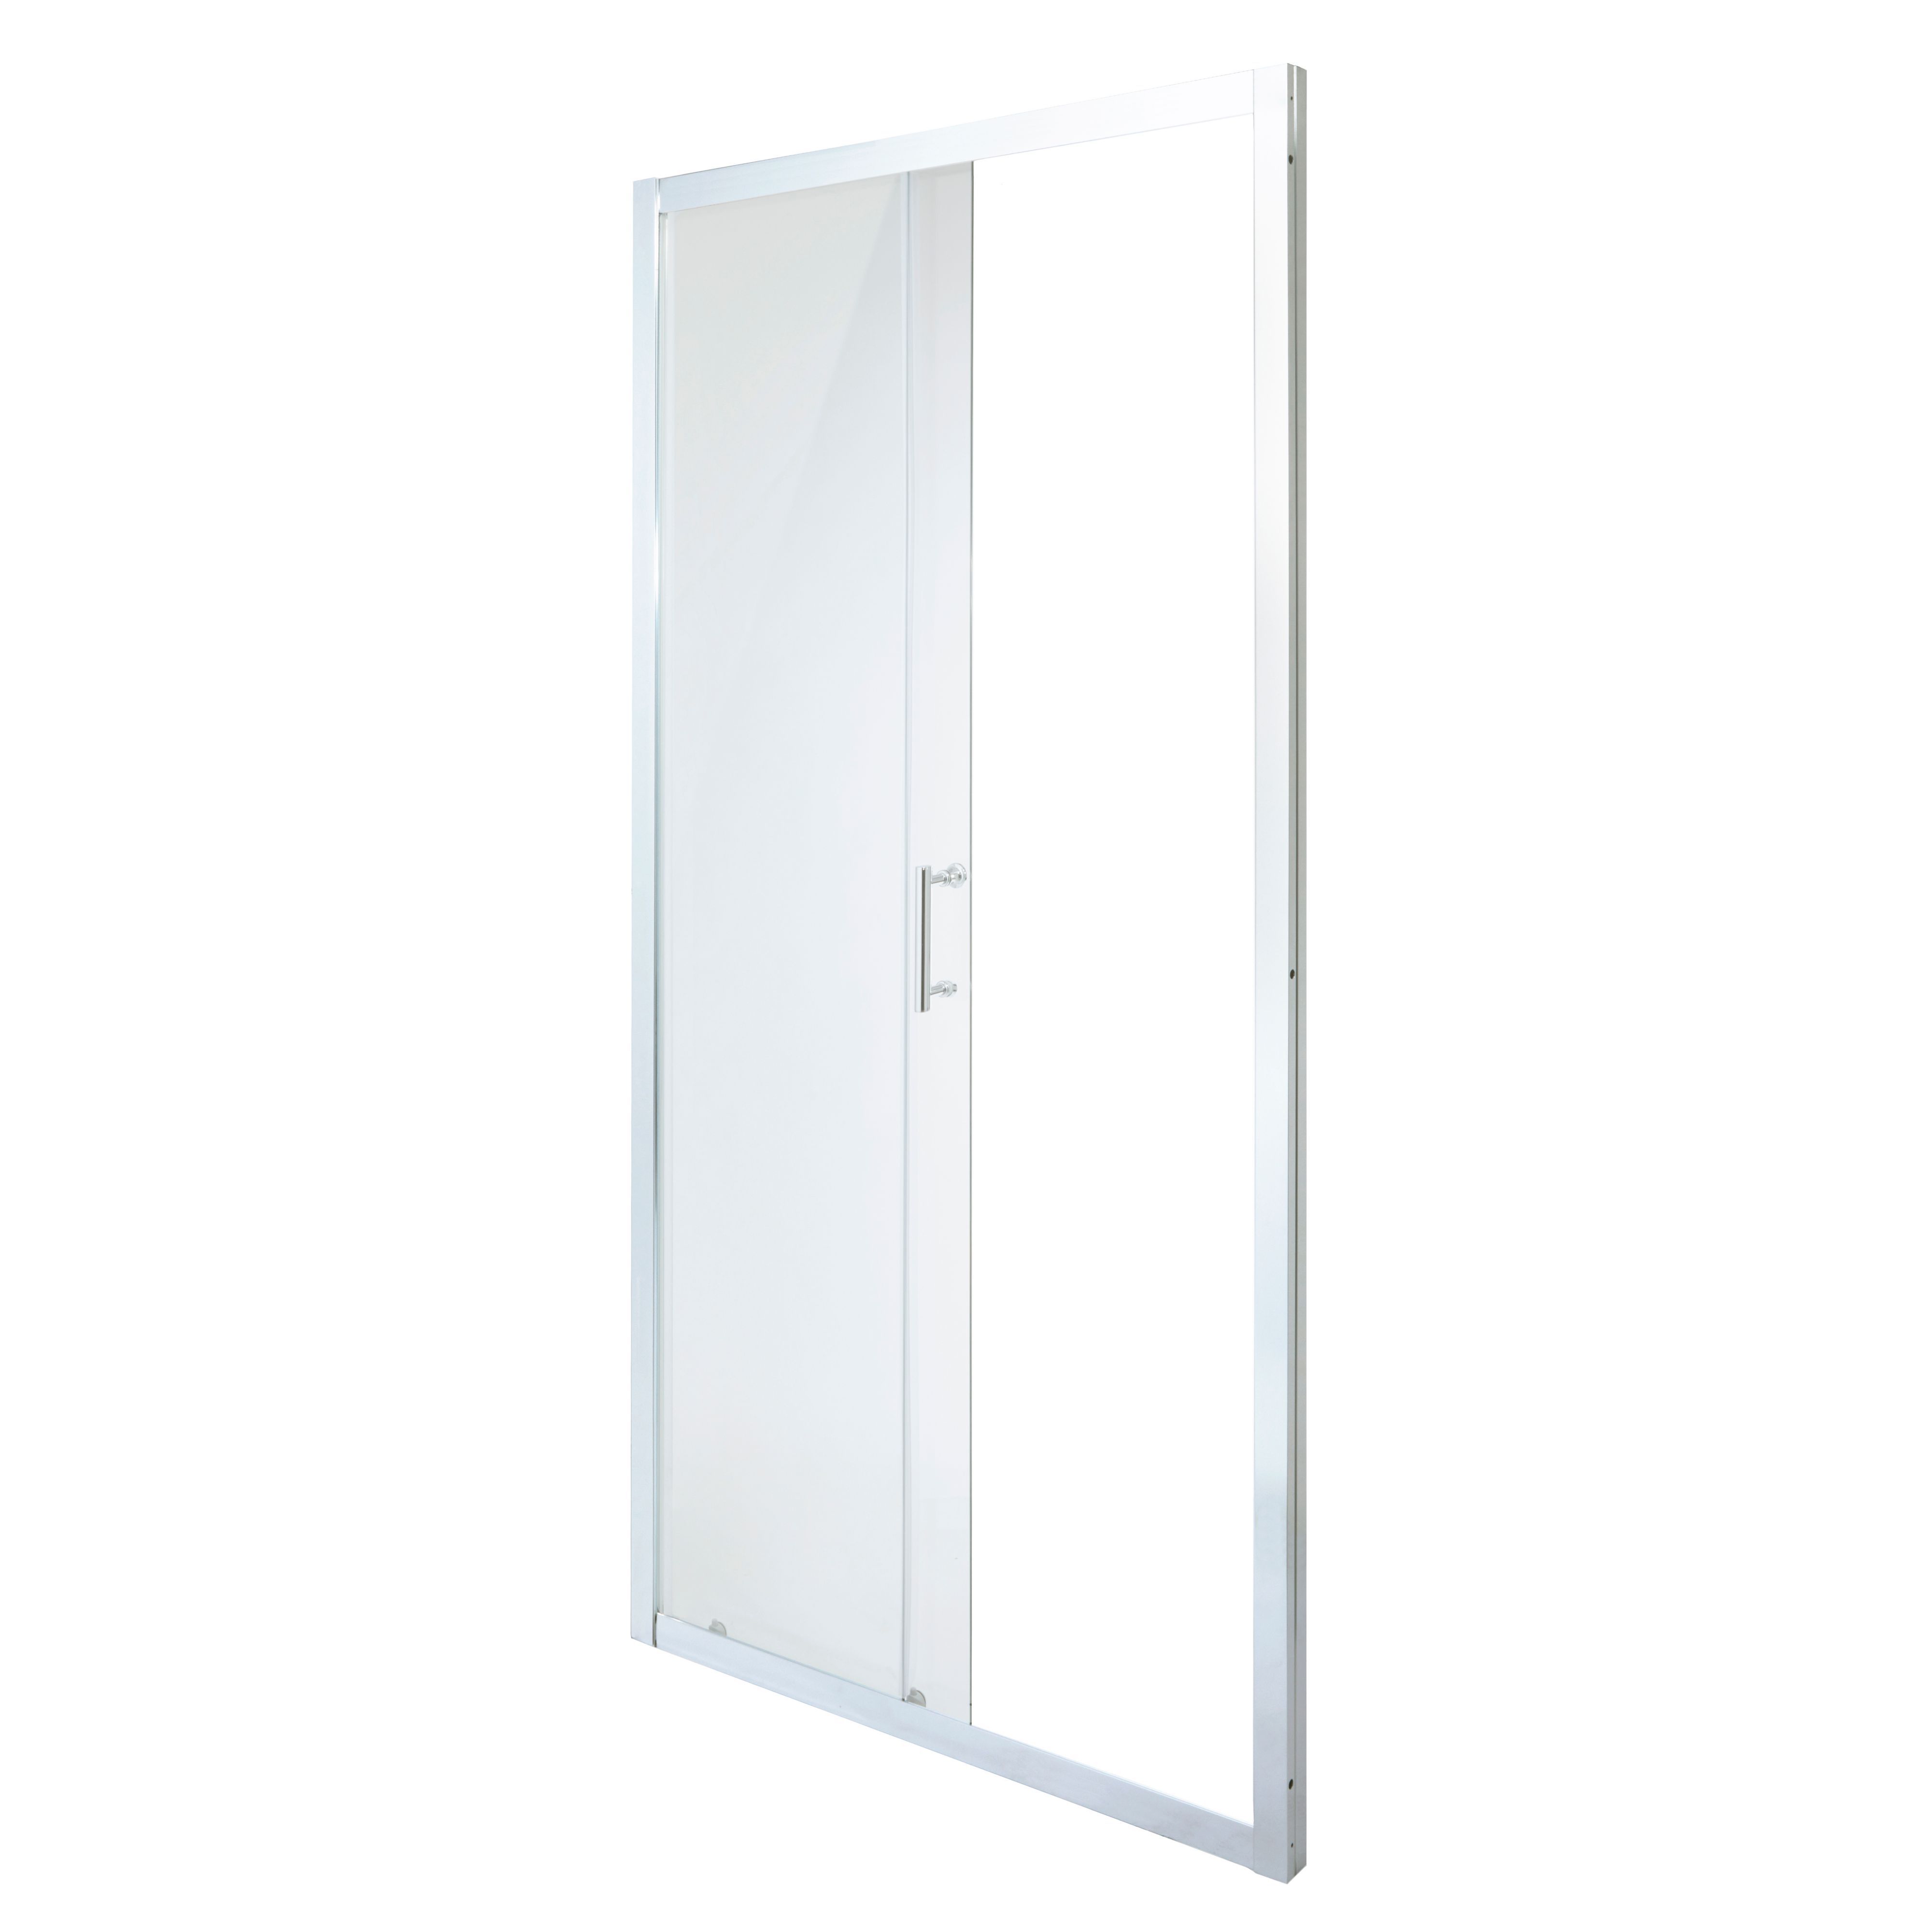 Cooke & Lewis Onega Argenté Silver effect Clear Sliding Shower Door (H)190cm (W)100cm